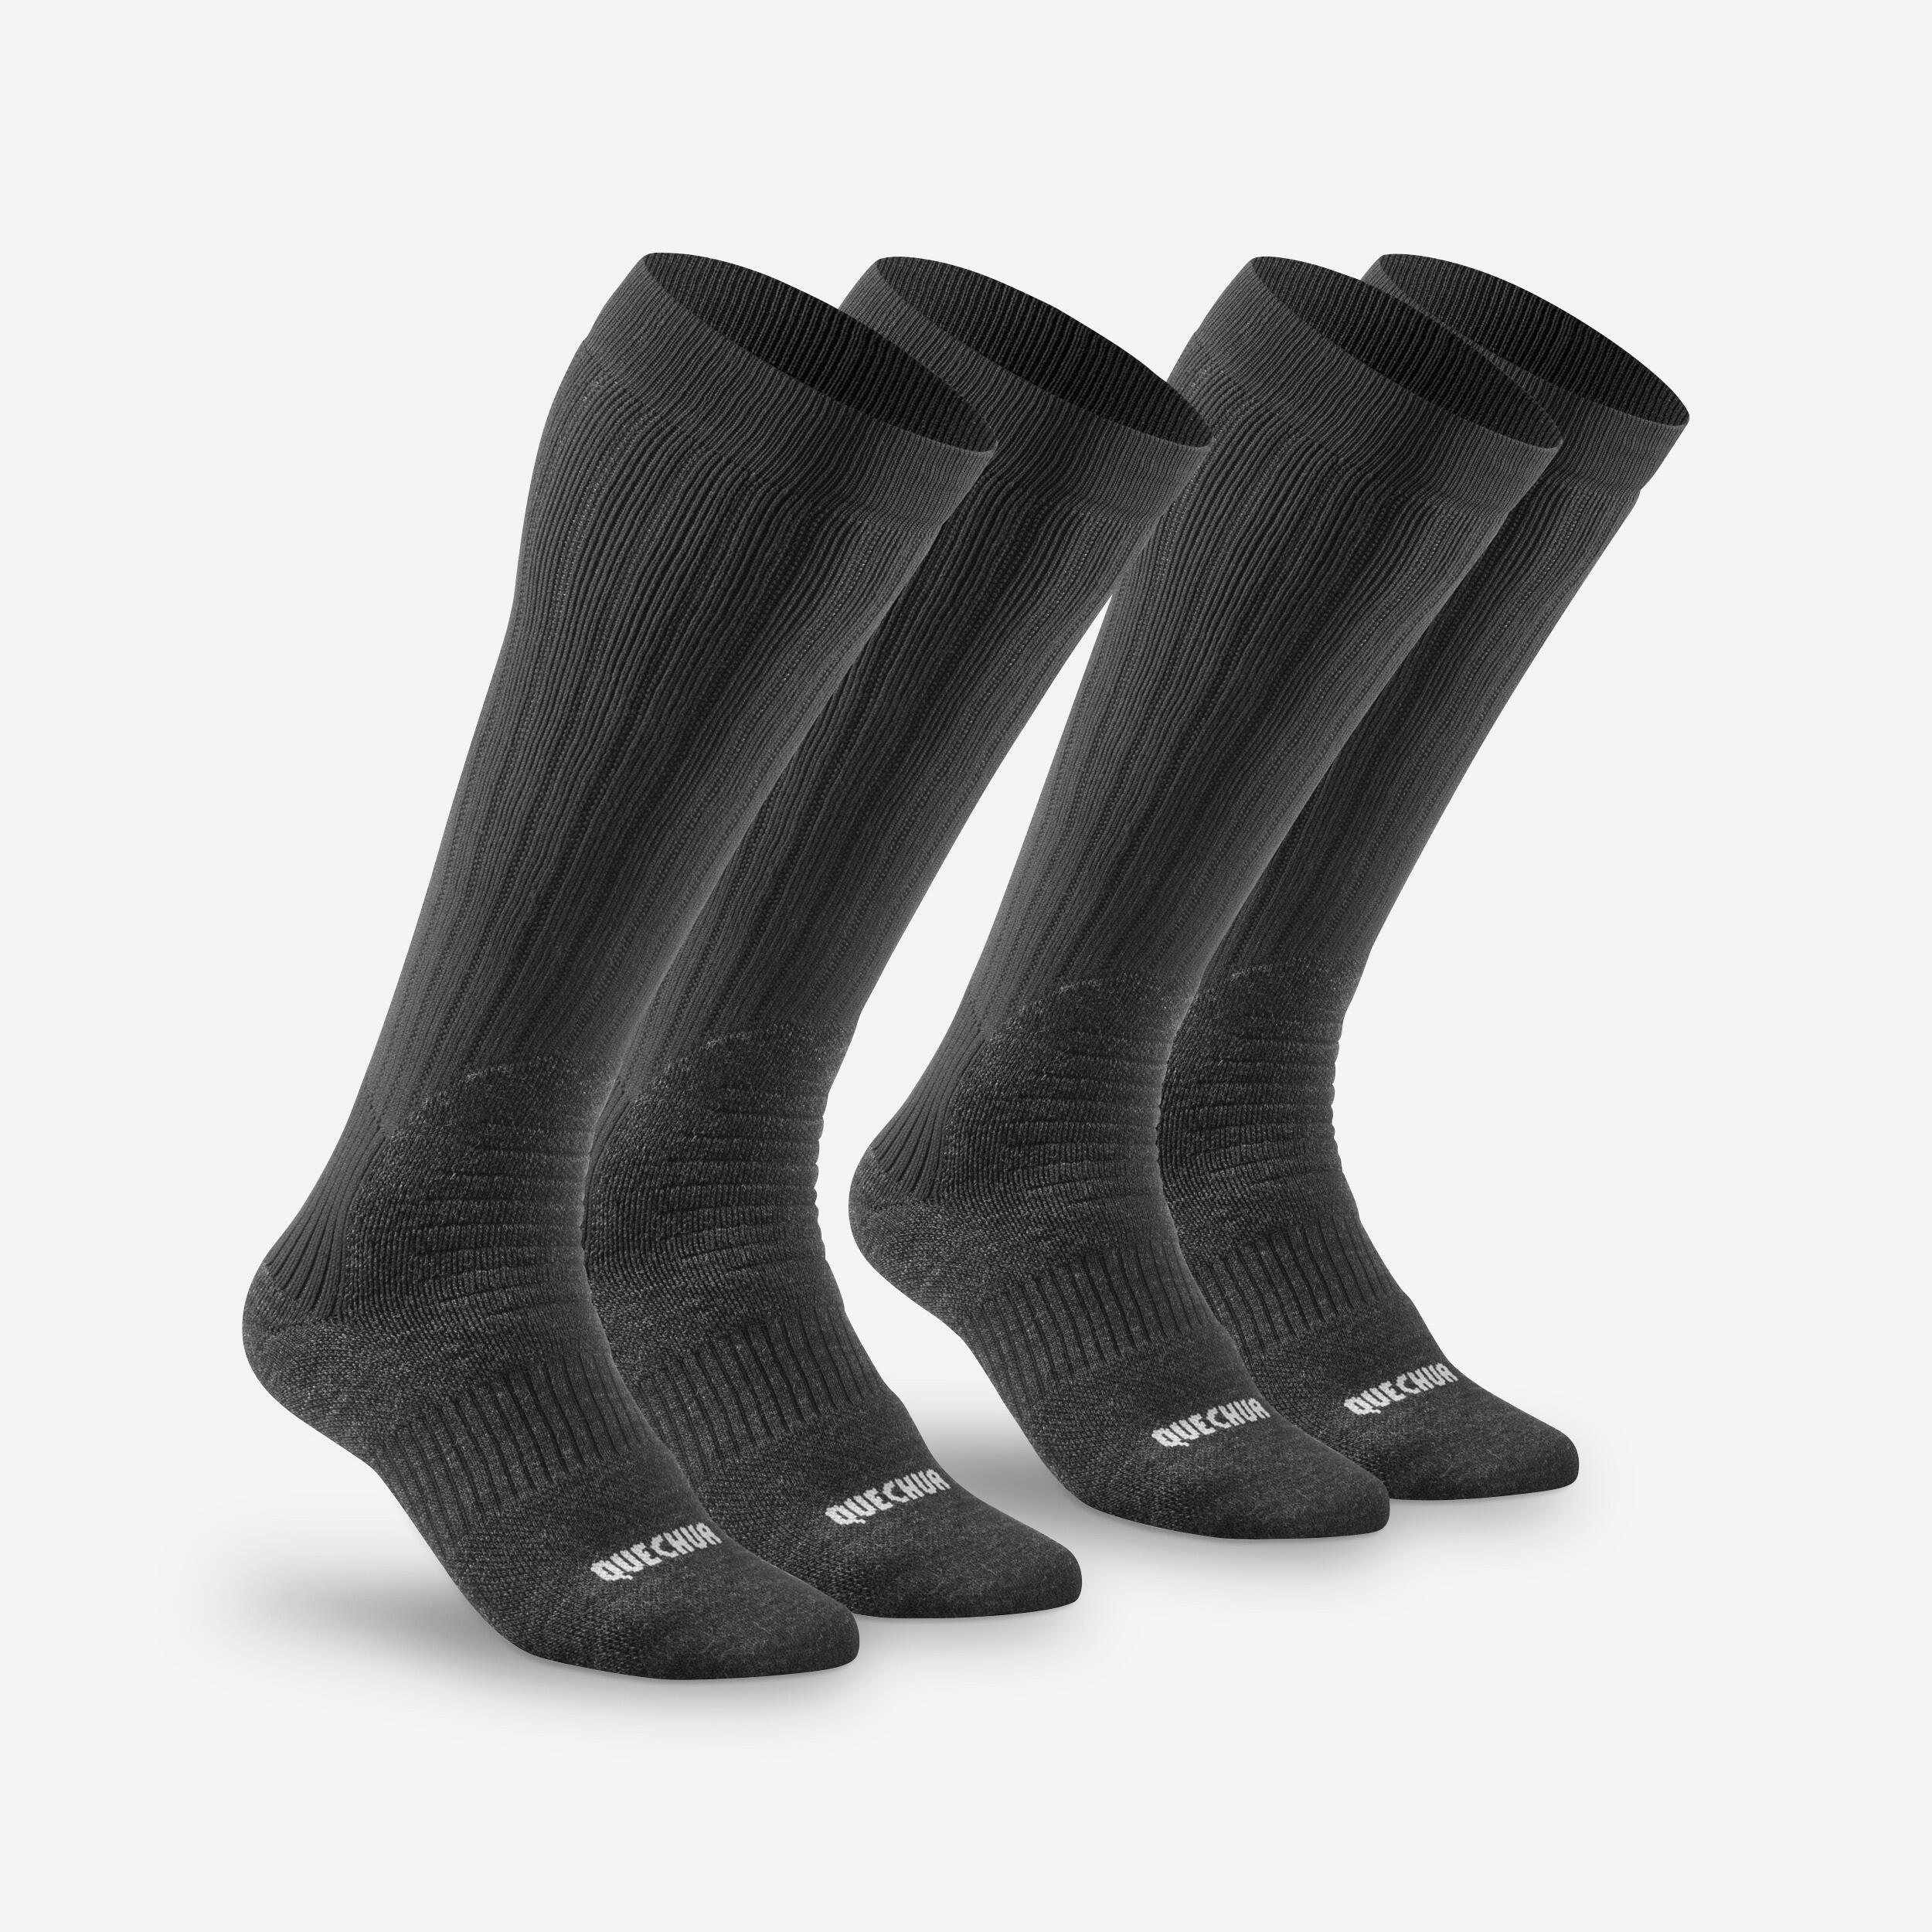 Warm Hiking Socks - SH100 X-WARM HAUTES - 2 Pairs 1/5